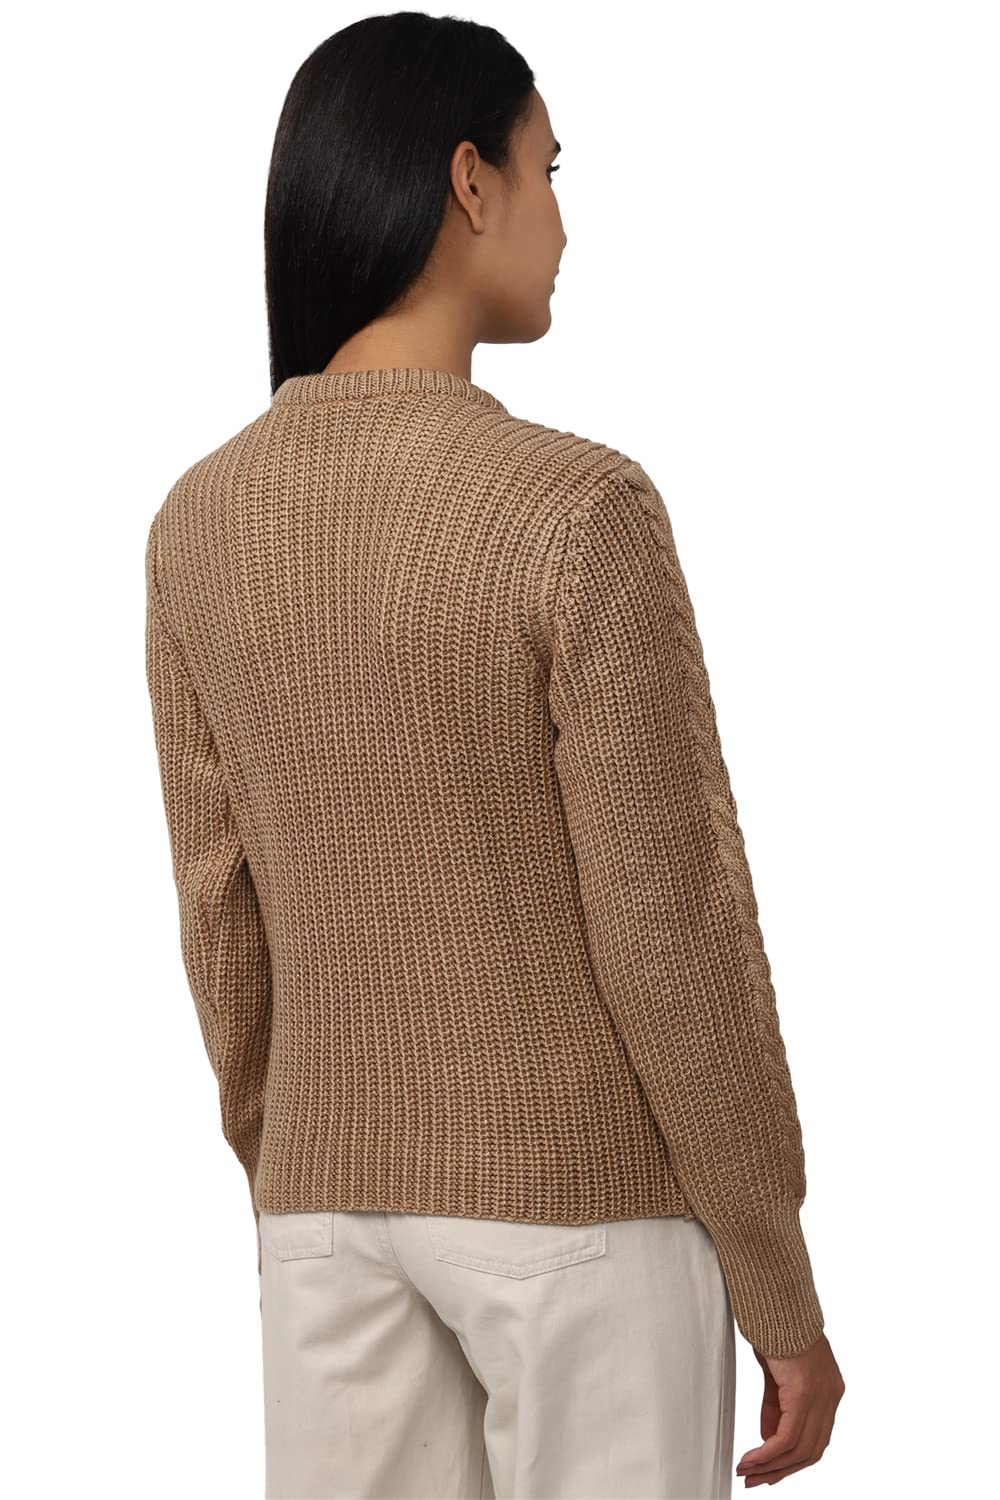 Van Heusen Women's Cotton Crew Neck Sweater (VWSWURGB142422_Brown